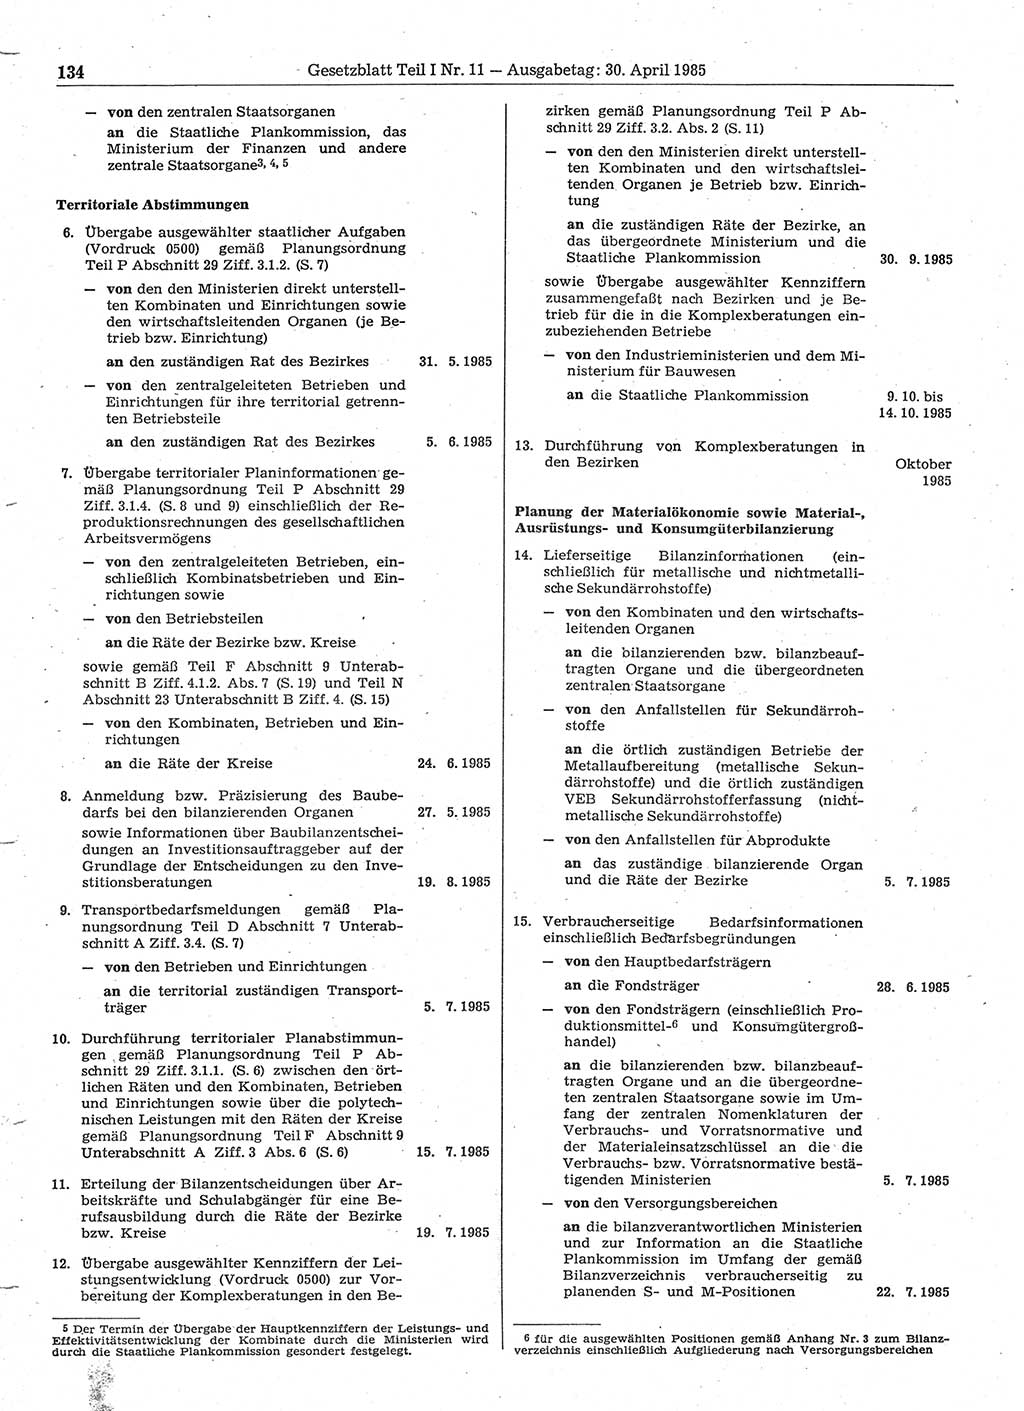 Gesetzblatt (GBl.) der Deutschen Demokratischen Republik (DDR) Teil Ⅰ 1985, Seite 134 (GBl. DDR Ⅰ 1985, S. 134)